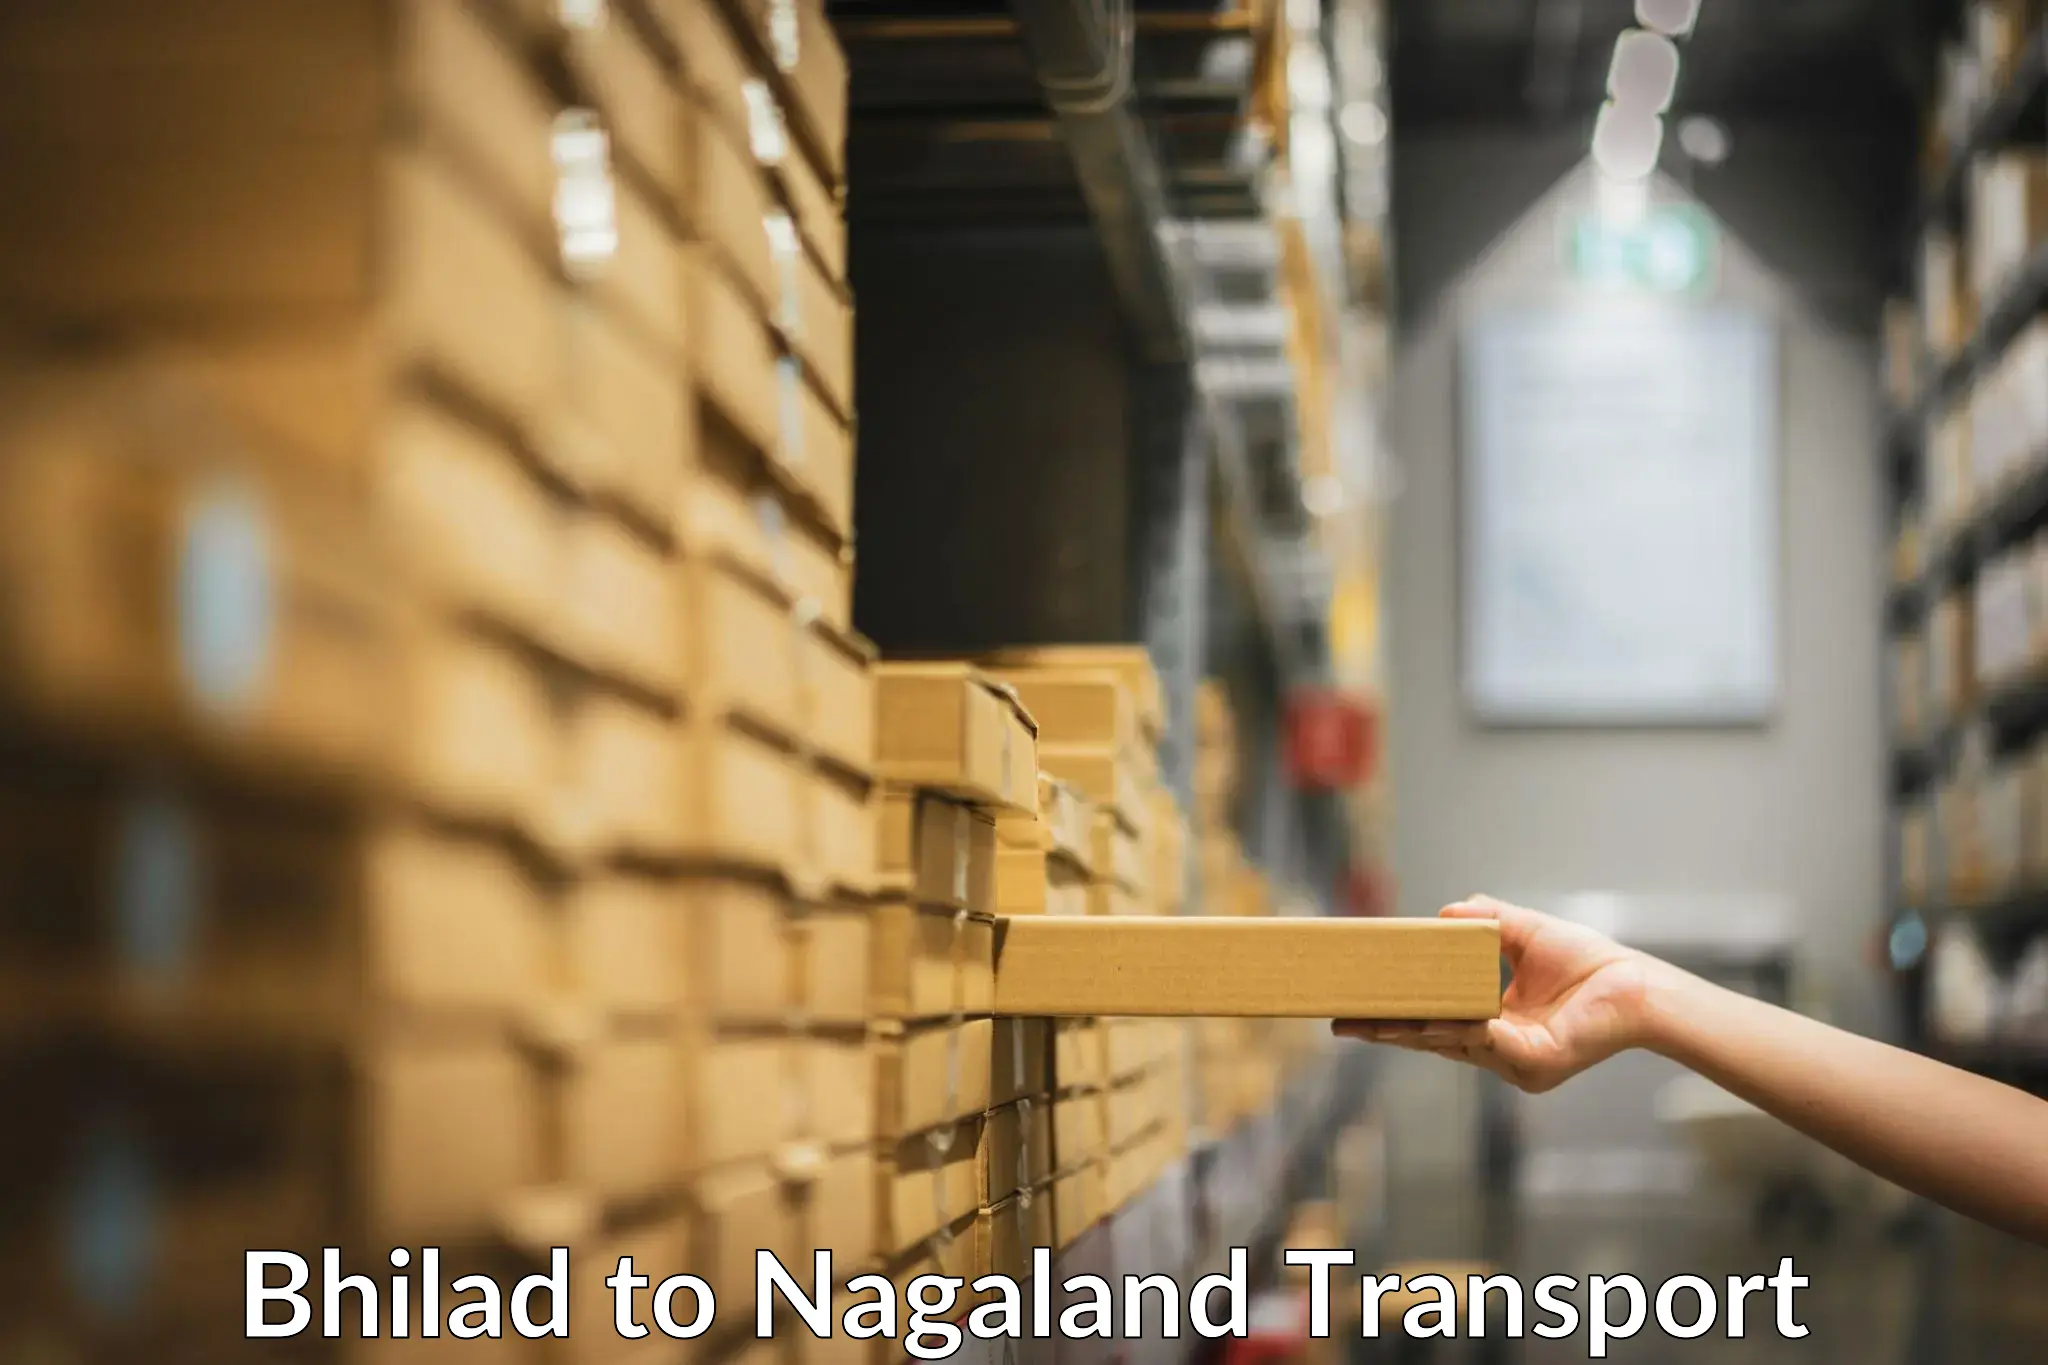 Pick up transport service Bhilad to Nagaland